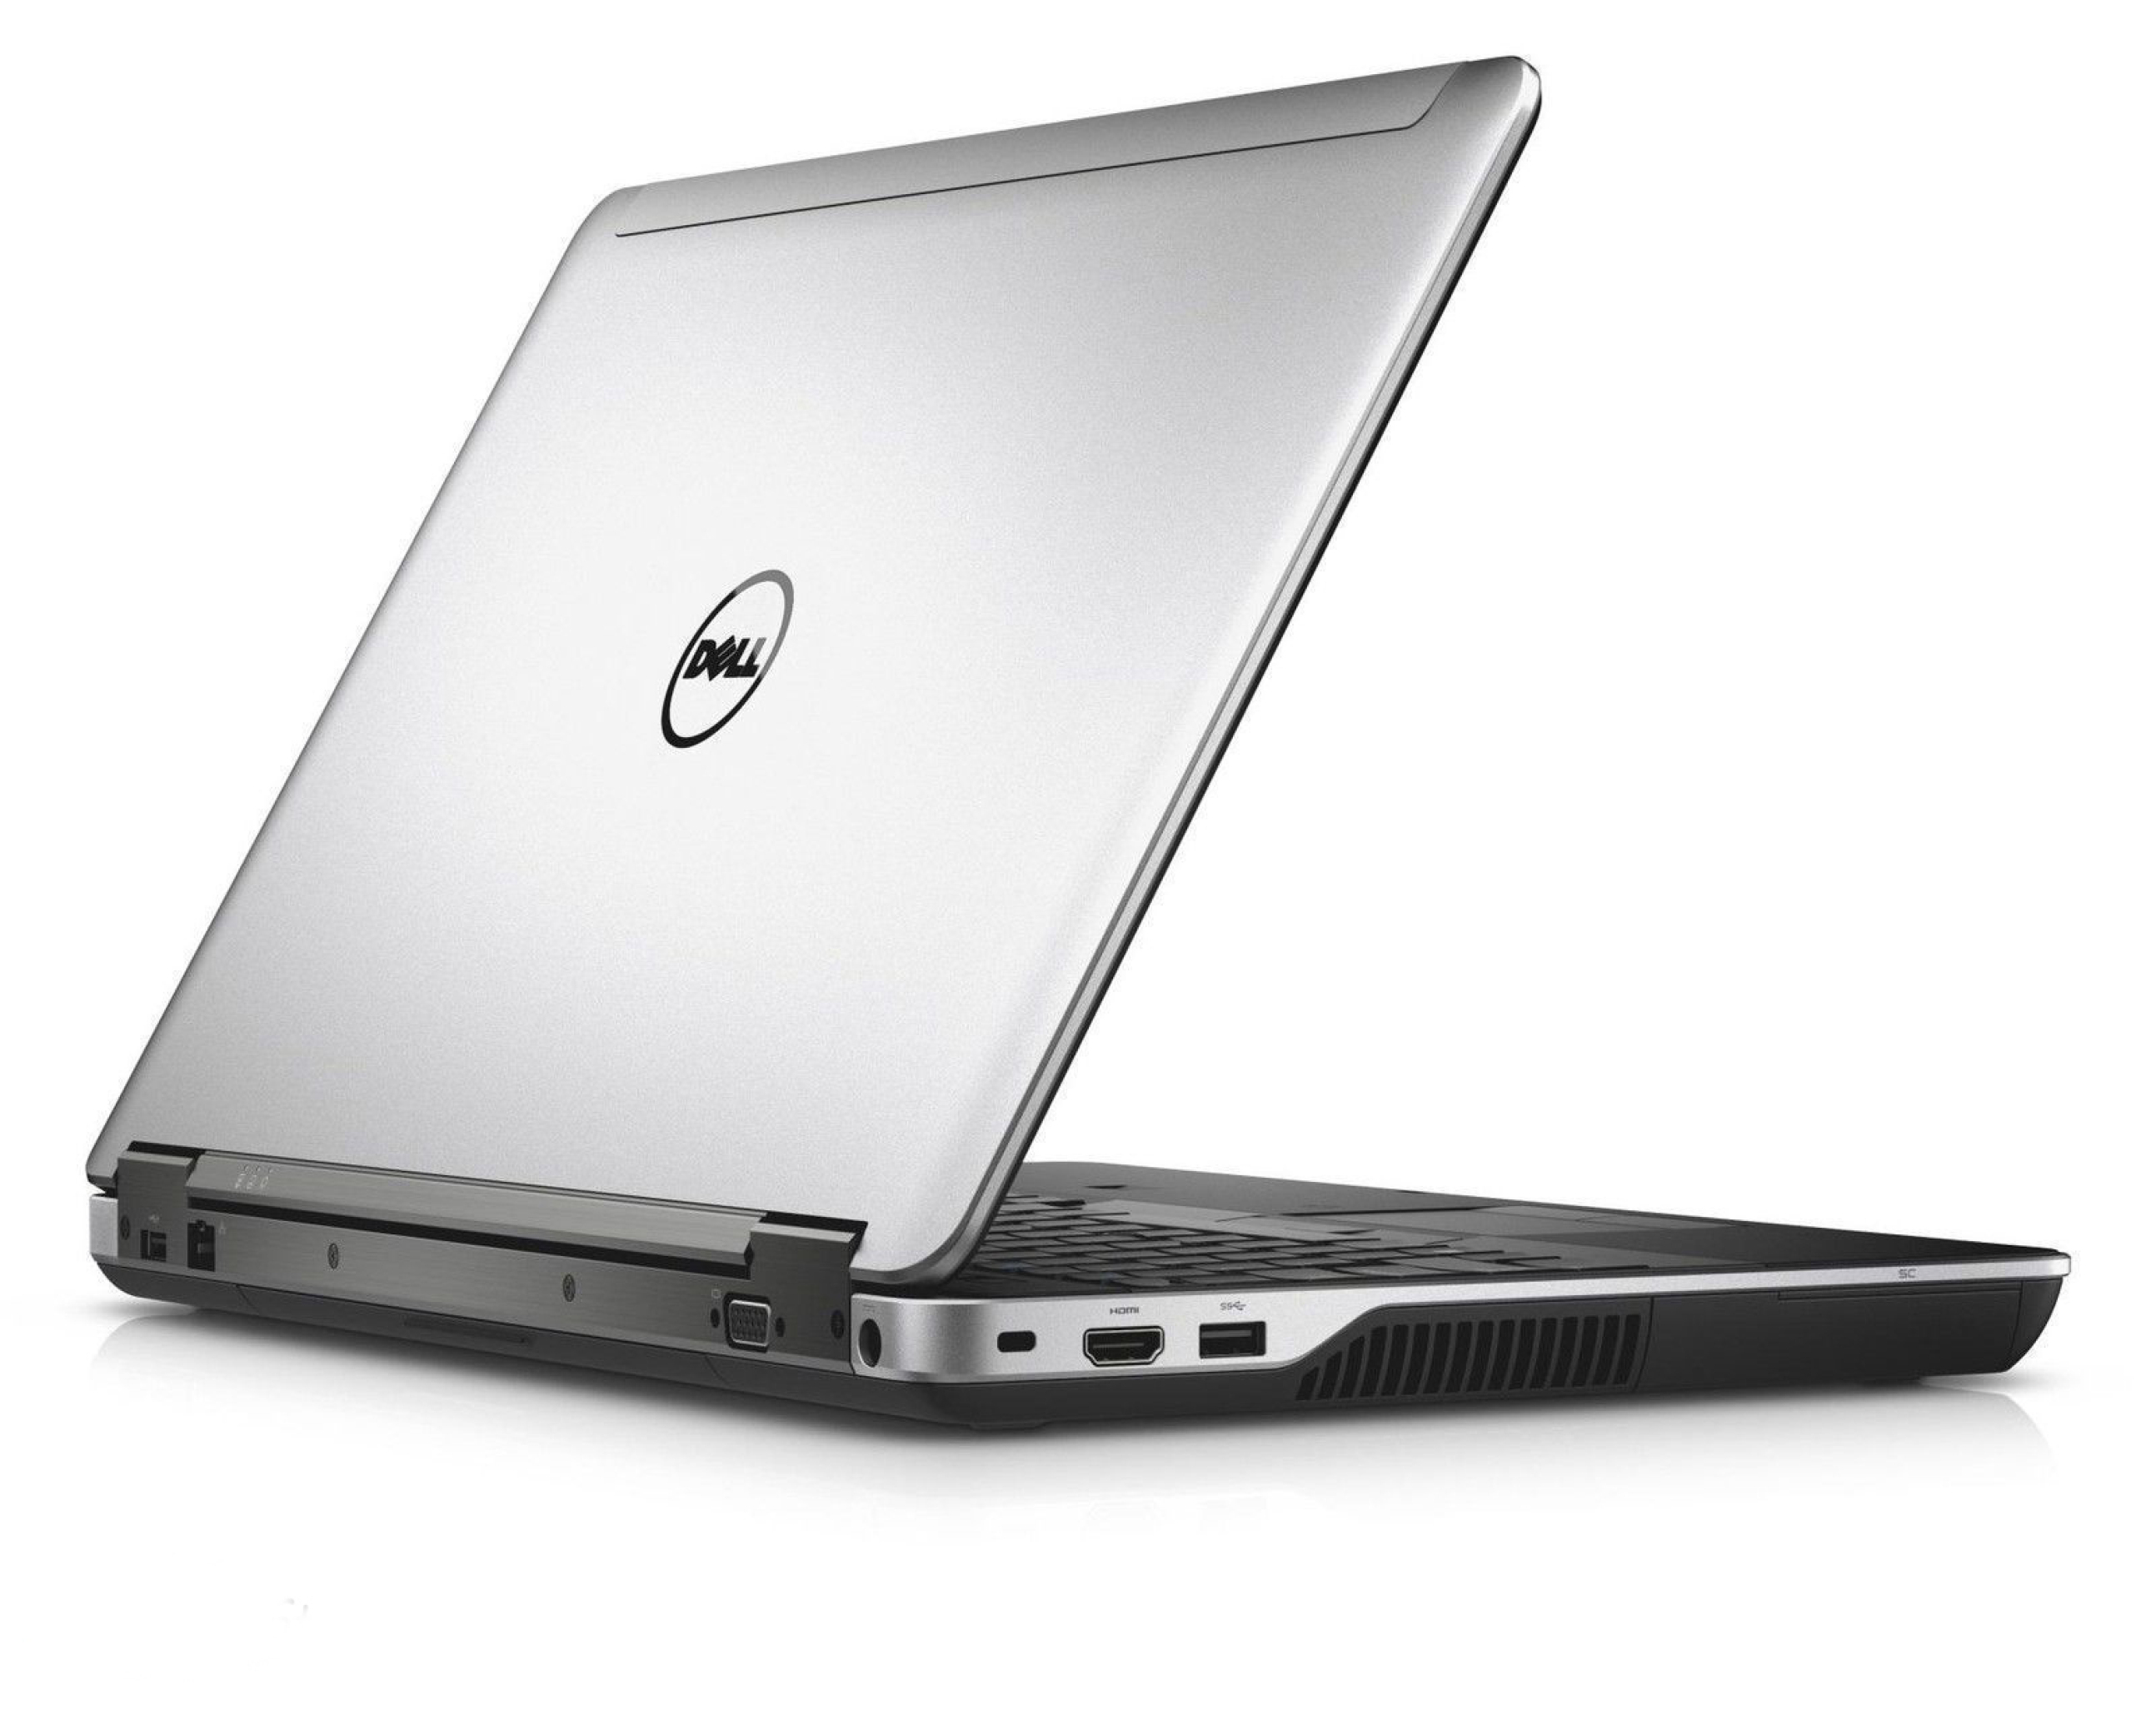  لپ تاپ Dell Latitude E6440 با پردازنده Core i7 | لاکچری لپ تاپ 